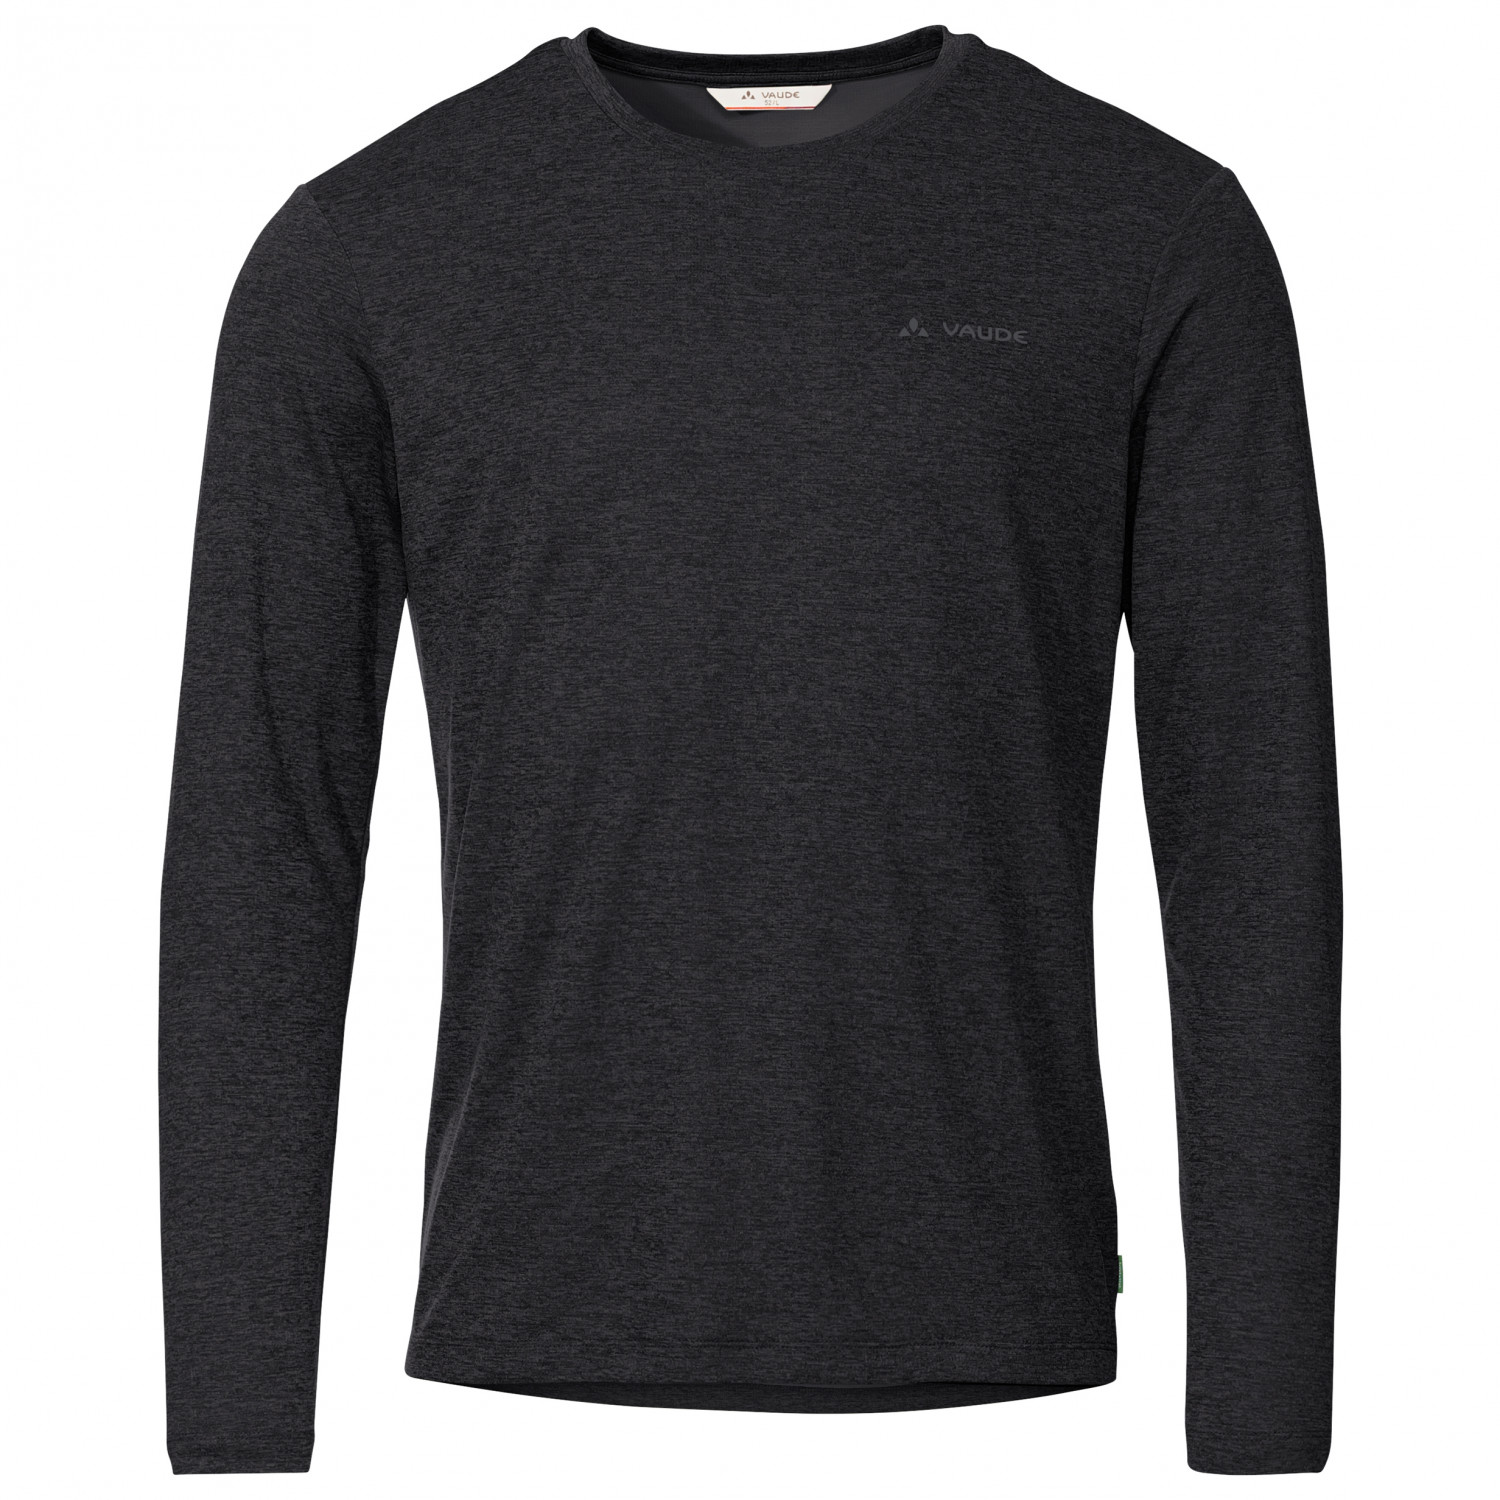 Функциональная рубашка Vaude Essential L/S T Shirt, черный officially licensed robocop omni consumer products men s t shirt s xxl sizes